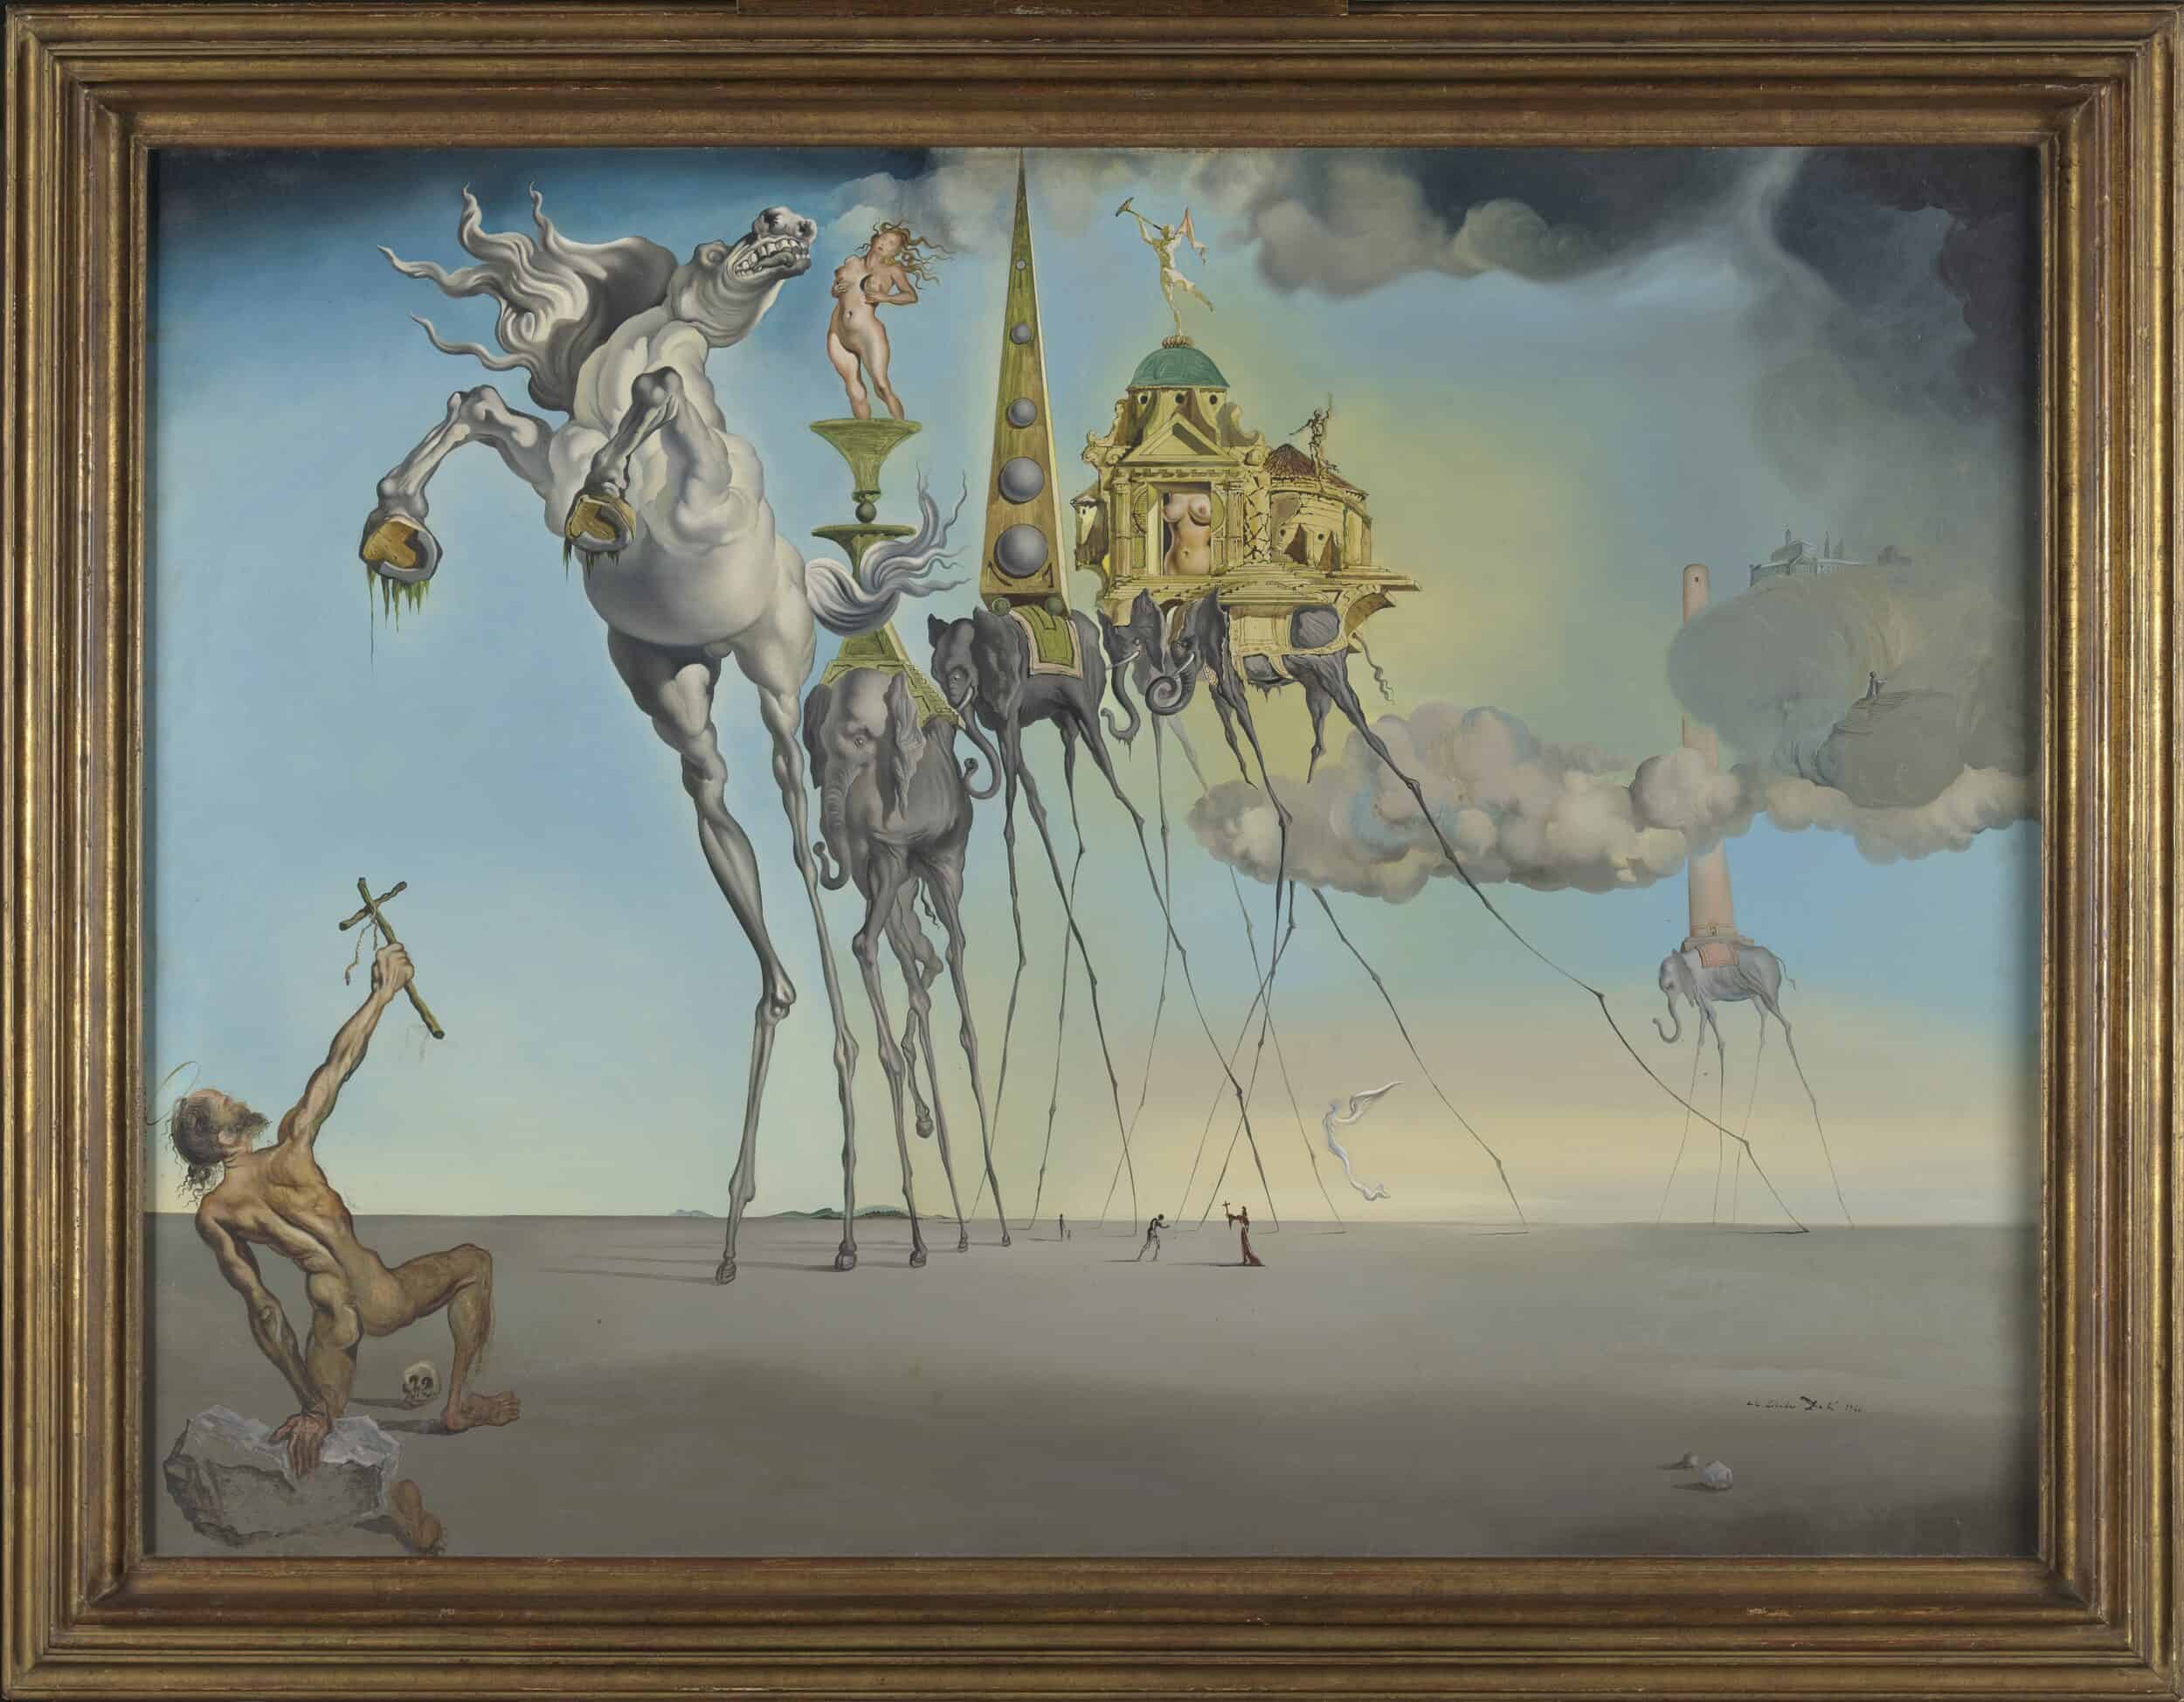 Salvador DALÍ, De bekoring van Sint-Antonius, 1946, olieverf op doek. KMSKB, Brussel, inv. 7223 © Salvador Dalí, Fundació Gala-Salvador Dalí, Figueres | foto: J. Geleyns - Art Photography